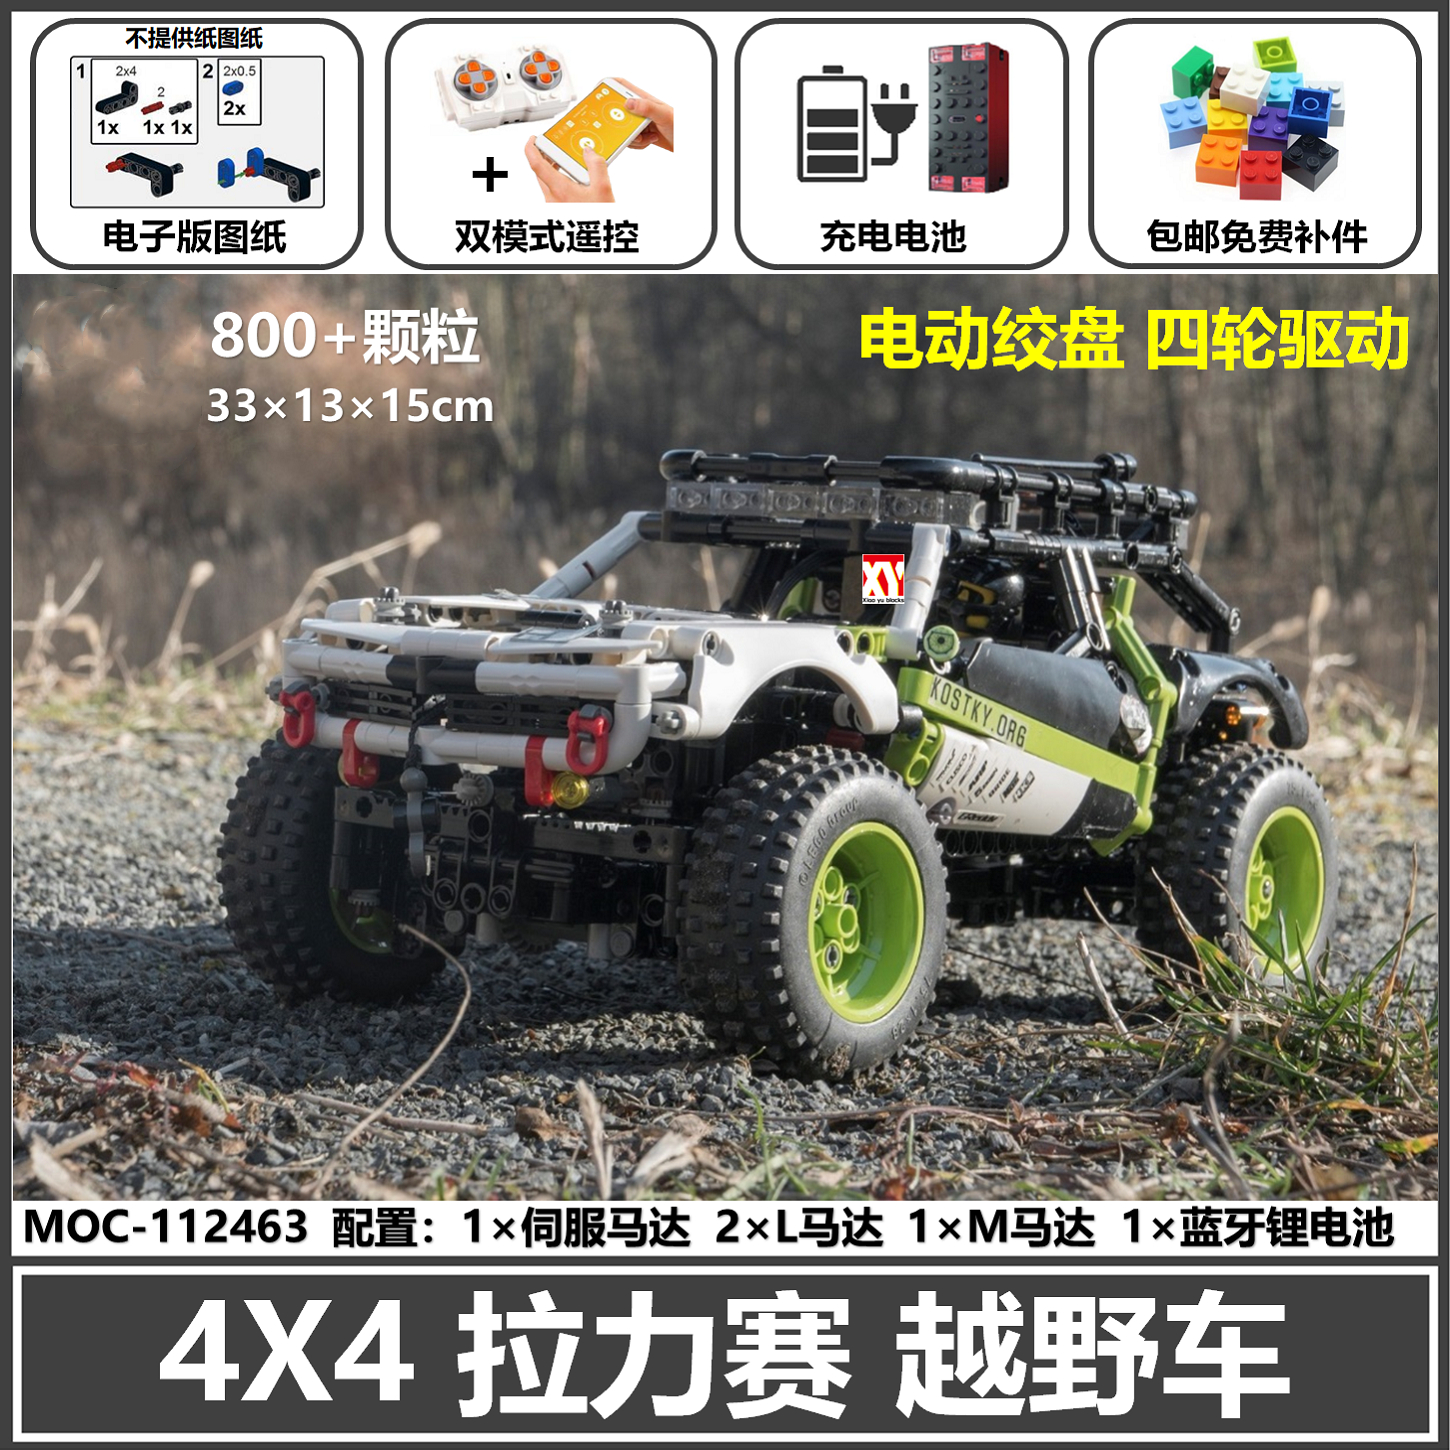 国产积木 兼容乐高Buggy 4x4探险队越野车拼装模型玩具MOC-112463